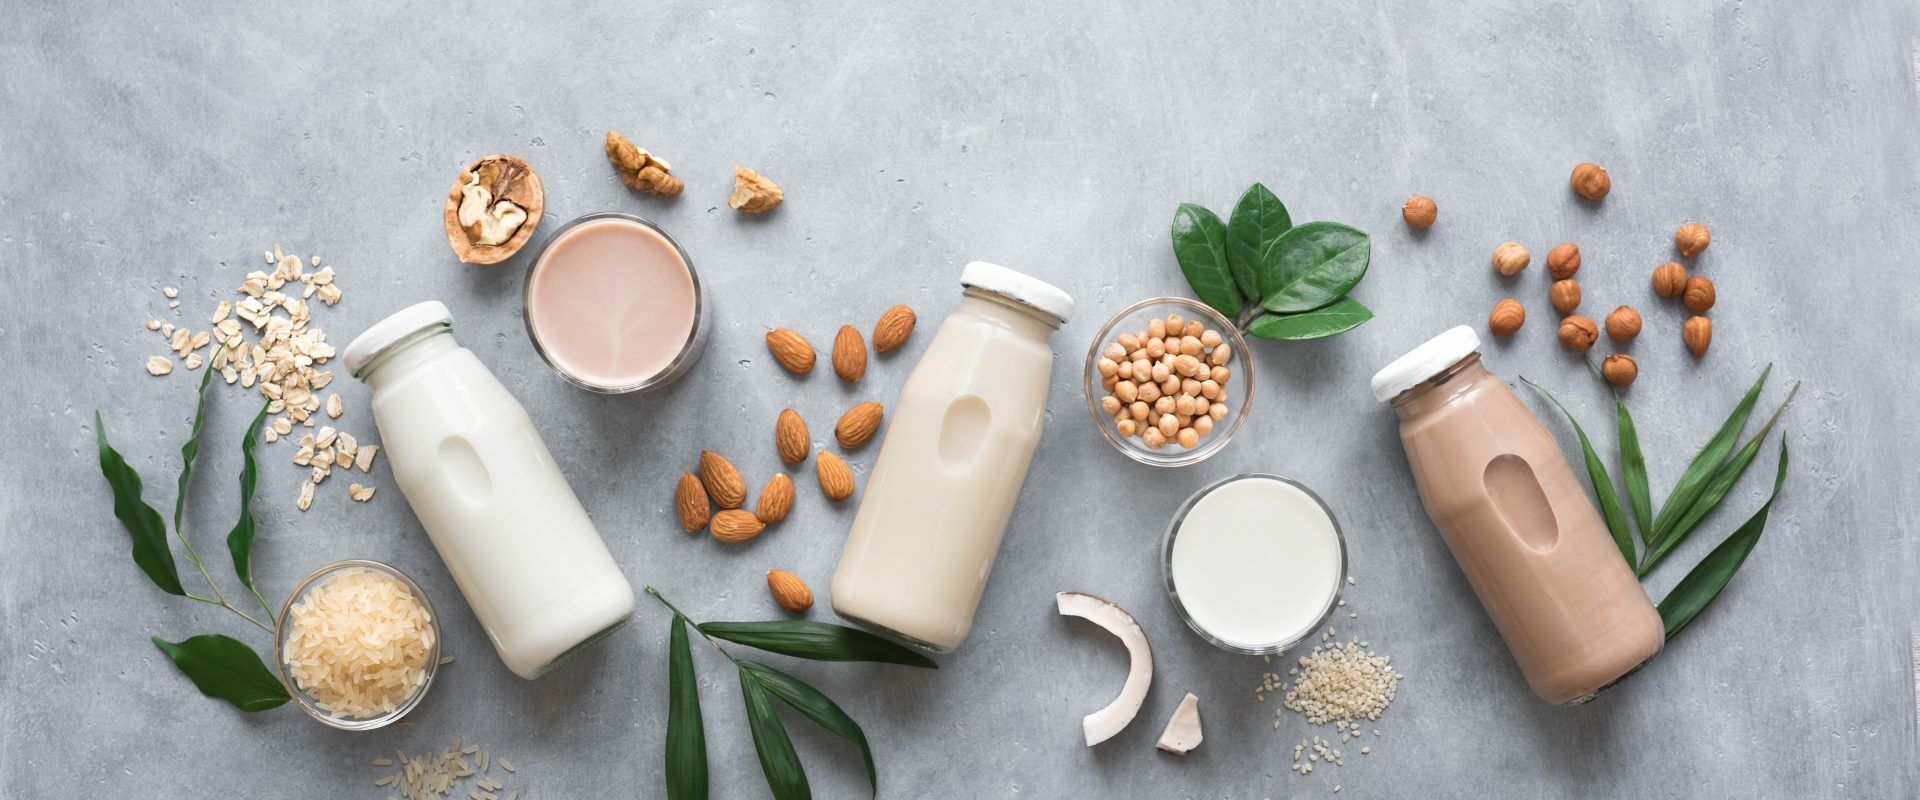 Mleko roślinne - które jest naprawdę ekologiczne? Mleko owsiane, ryżowe, sojowe, kokosowe, a może konopne? Sprawdź, jak wybrać najlepsze eko mleko!